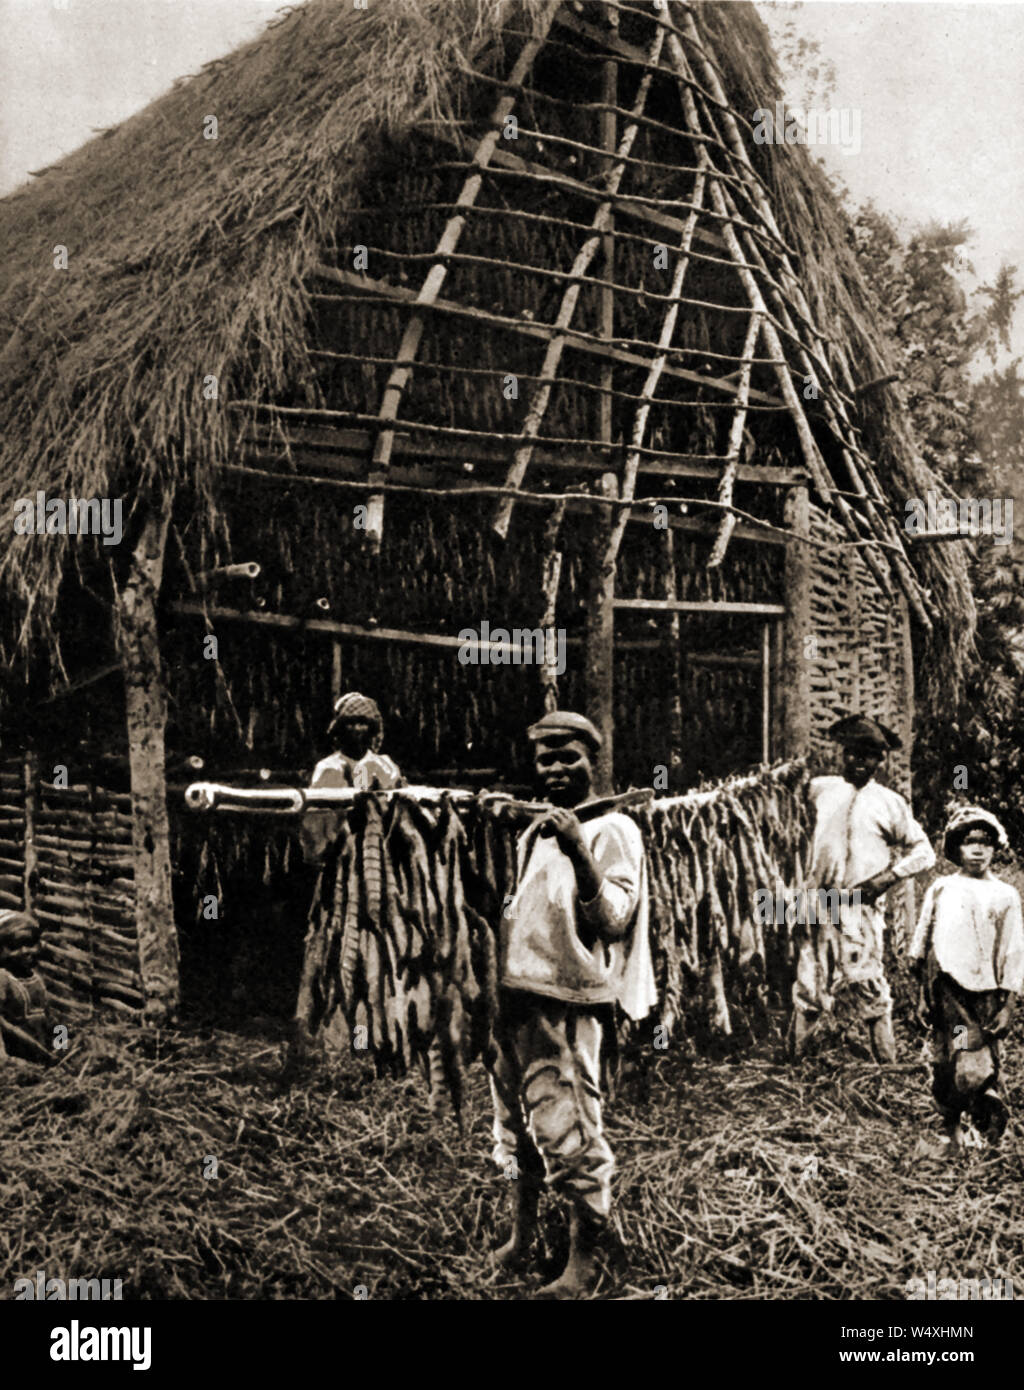 Le séchage du tabac en Jamaïque vers 1940 Banque D'Images